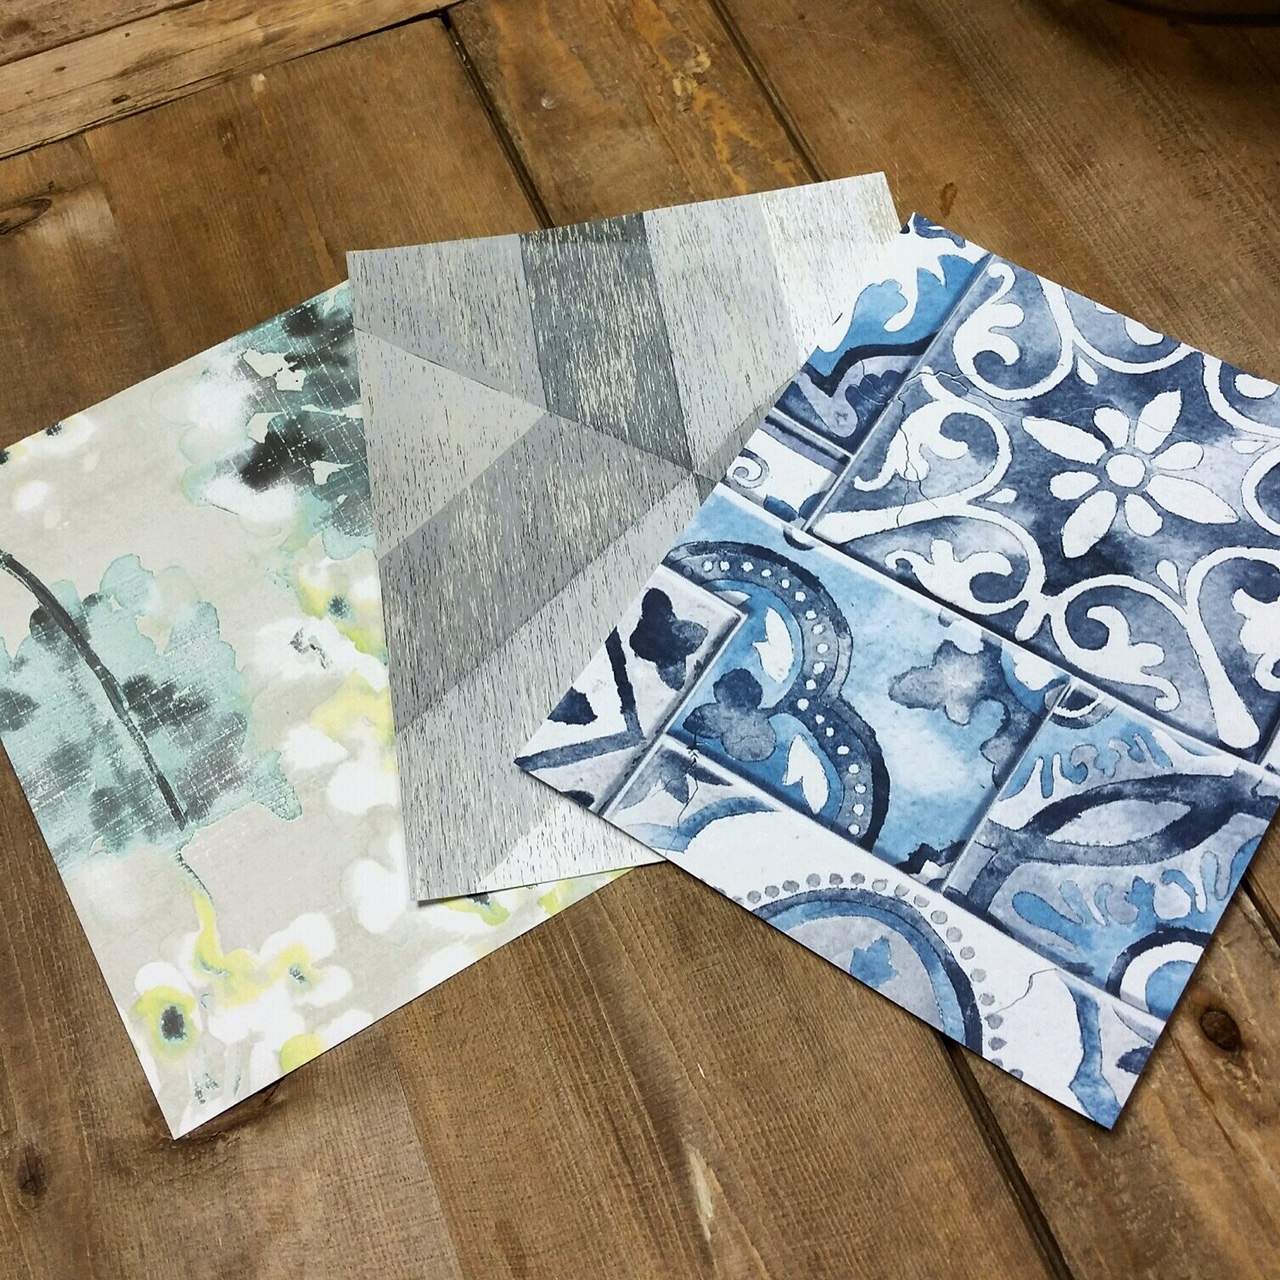 wallpaper samples